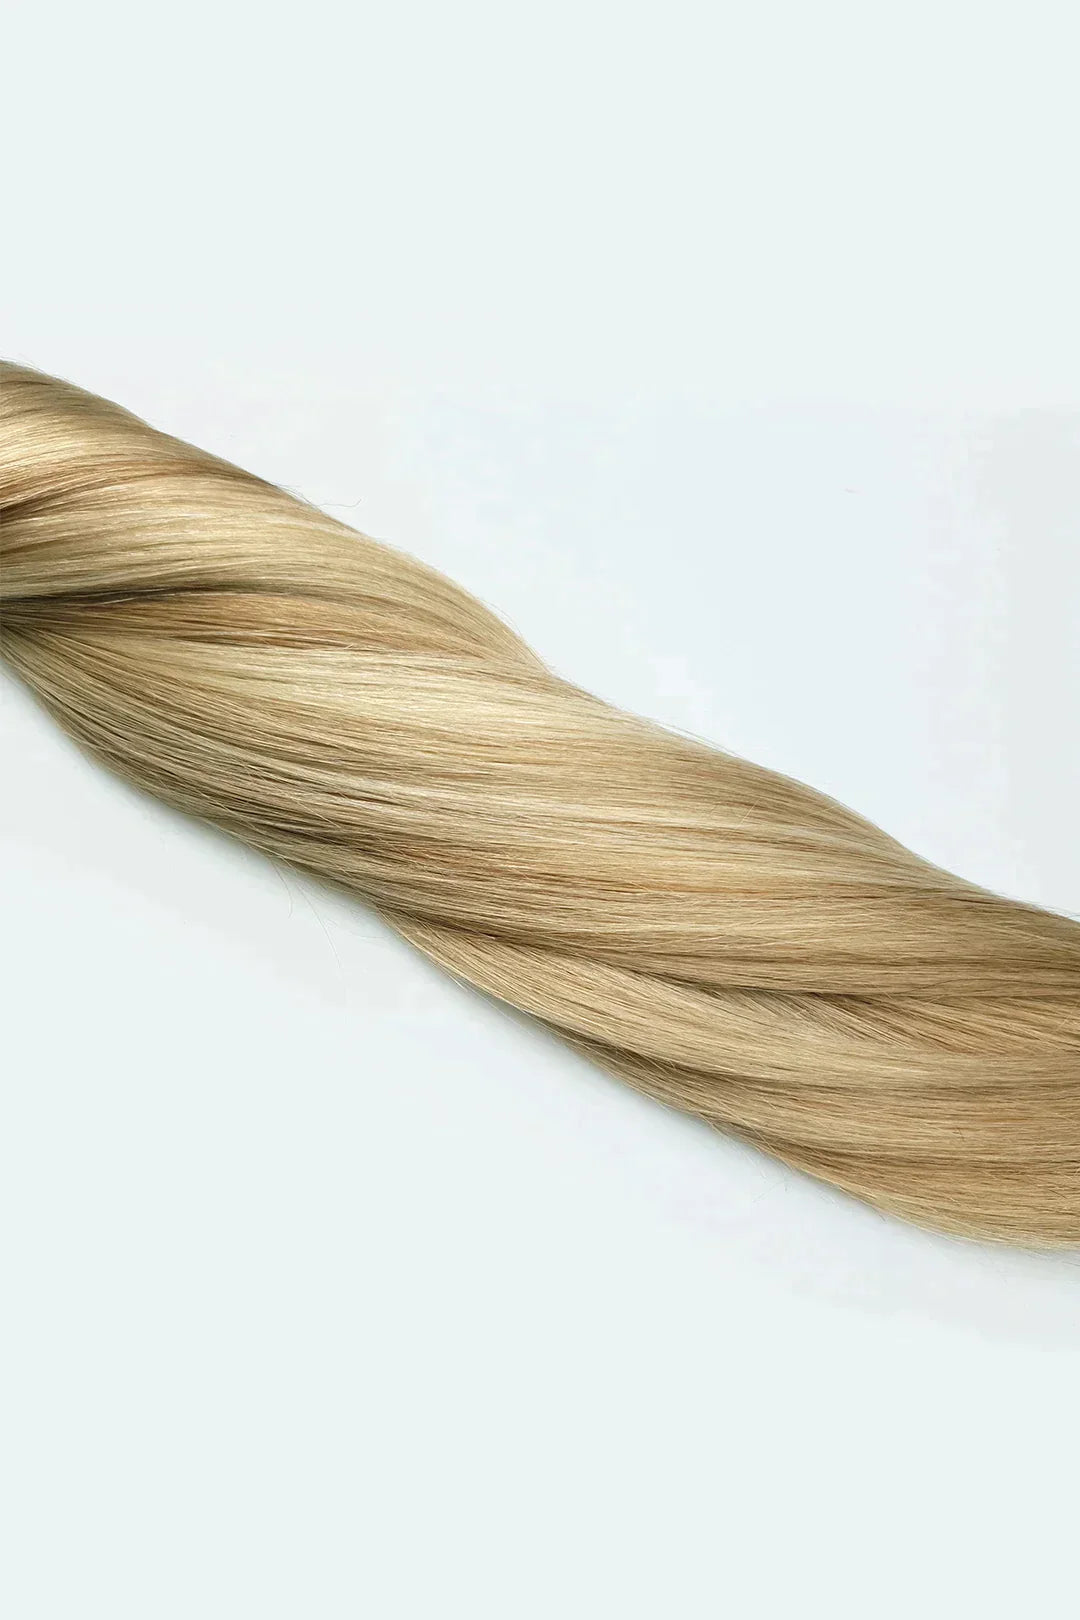 Clip-in hairextensions met highlights in verschillende blondtinten gemaakt van echt mensen haar. Blend gemakkelijk met meerdere blondtinten. 